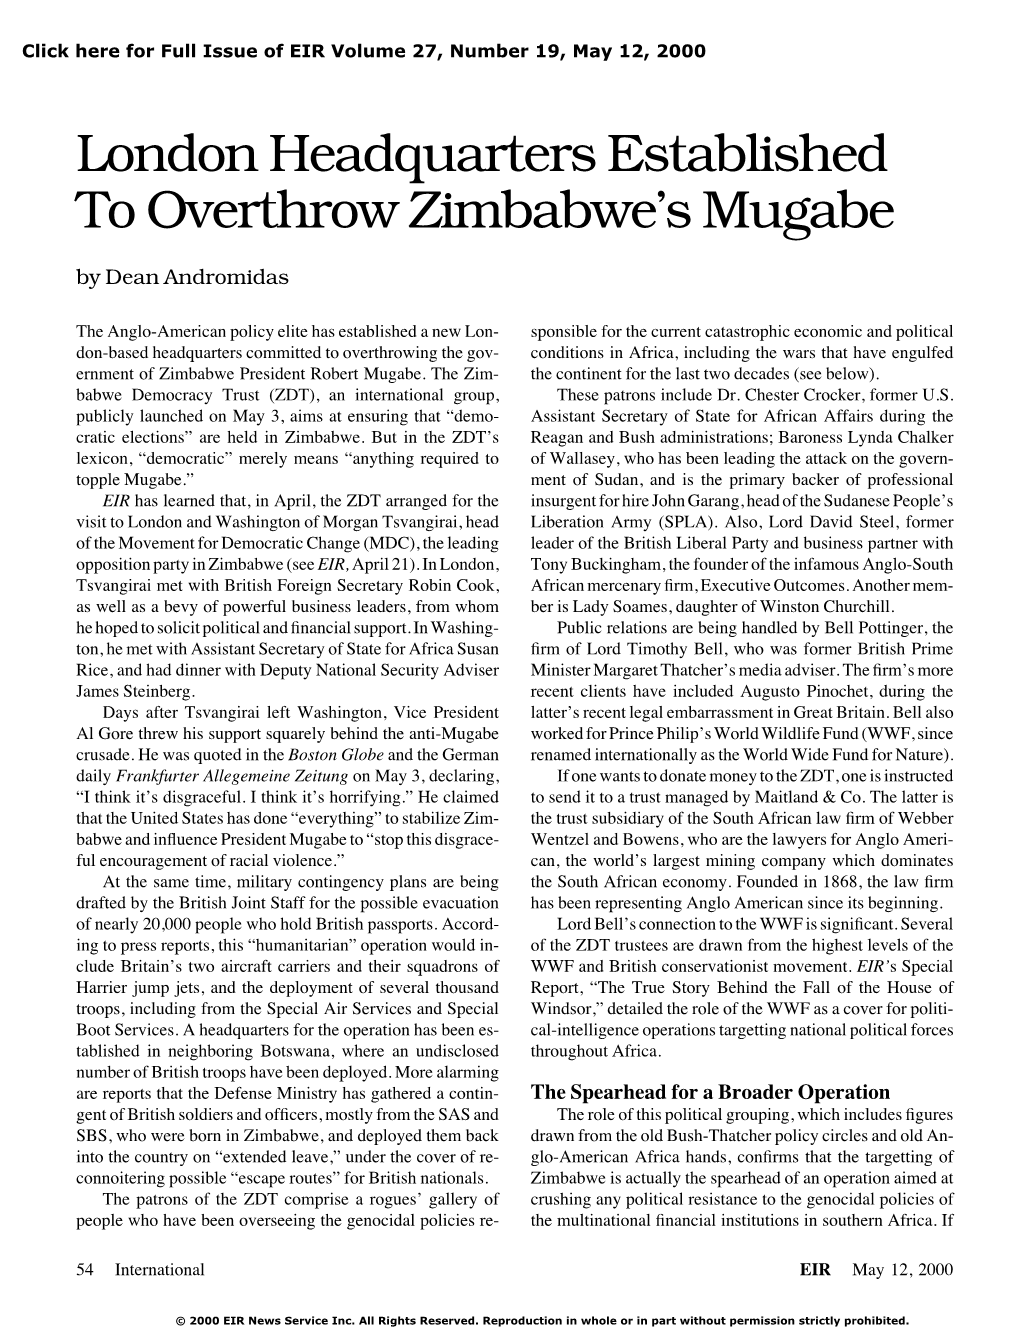 London Headquarters Established to Overthrow Zimbabwe's Mugabe